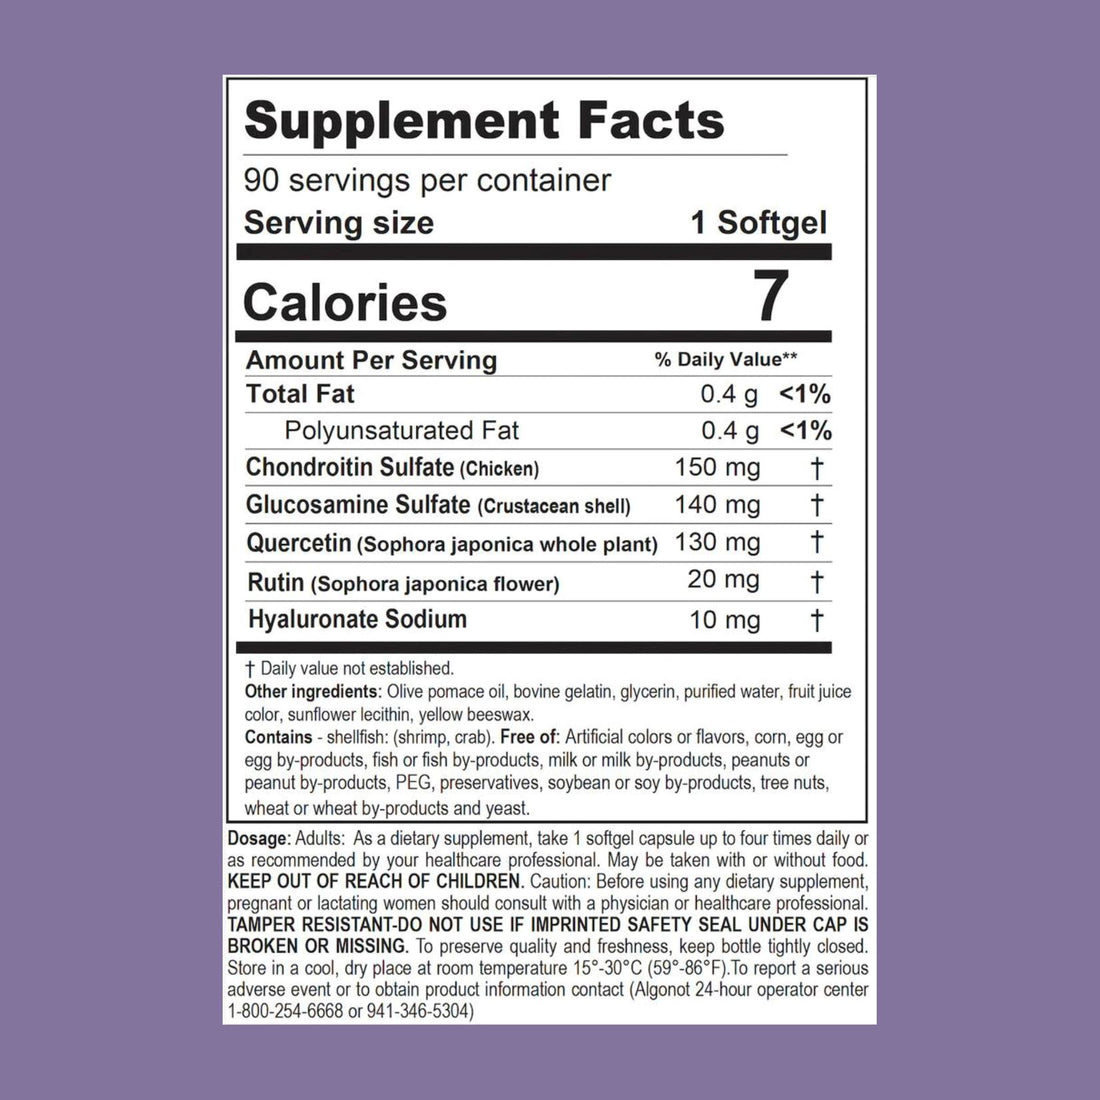 CystoProtek® | Promotes Bladder Health - 90 Softgels Oral Supplements Algonot 